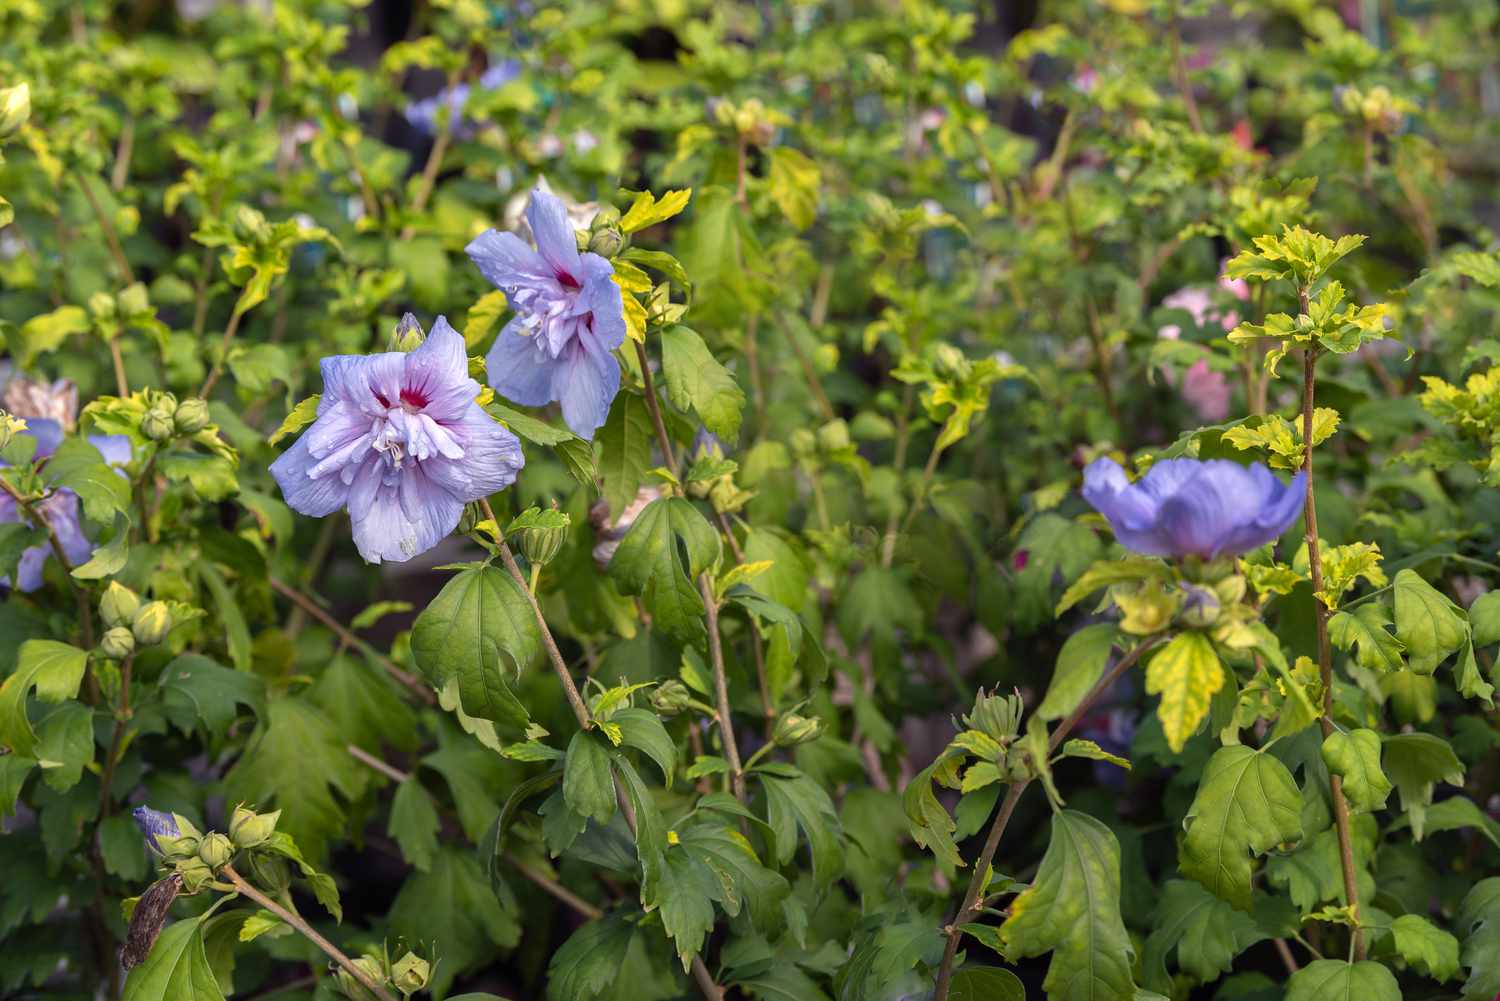 Blaue Chiffonrose mit violetten Blütenblättern auf dünnen Stielen mit gelb-grünen Blättern